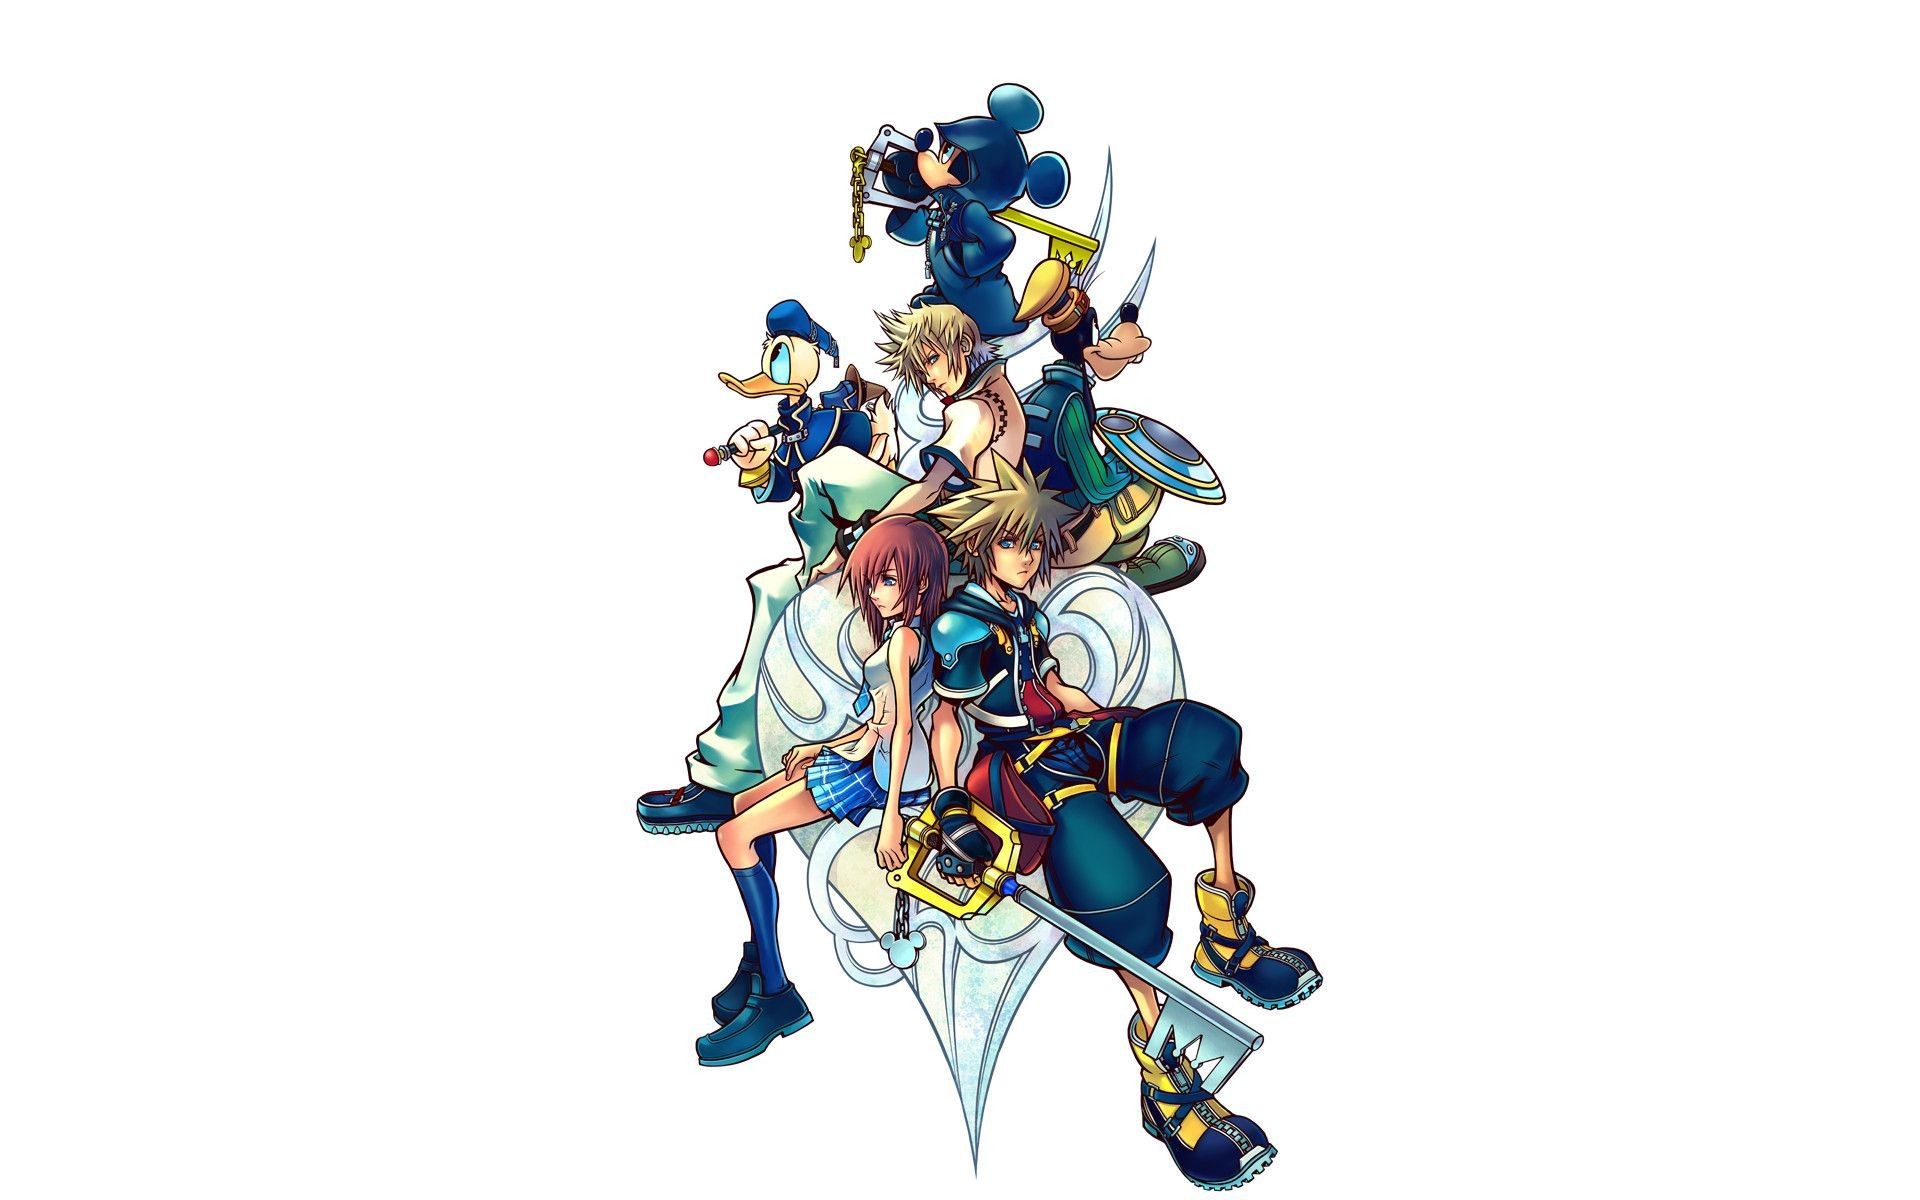 1920x1200 Kingdom Hearts Picture For Desktop Wallpaper 1920 x 1200 px 692.31 KB riku  sora organization 13